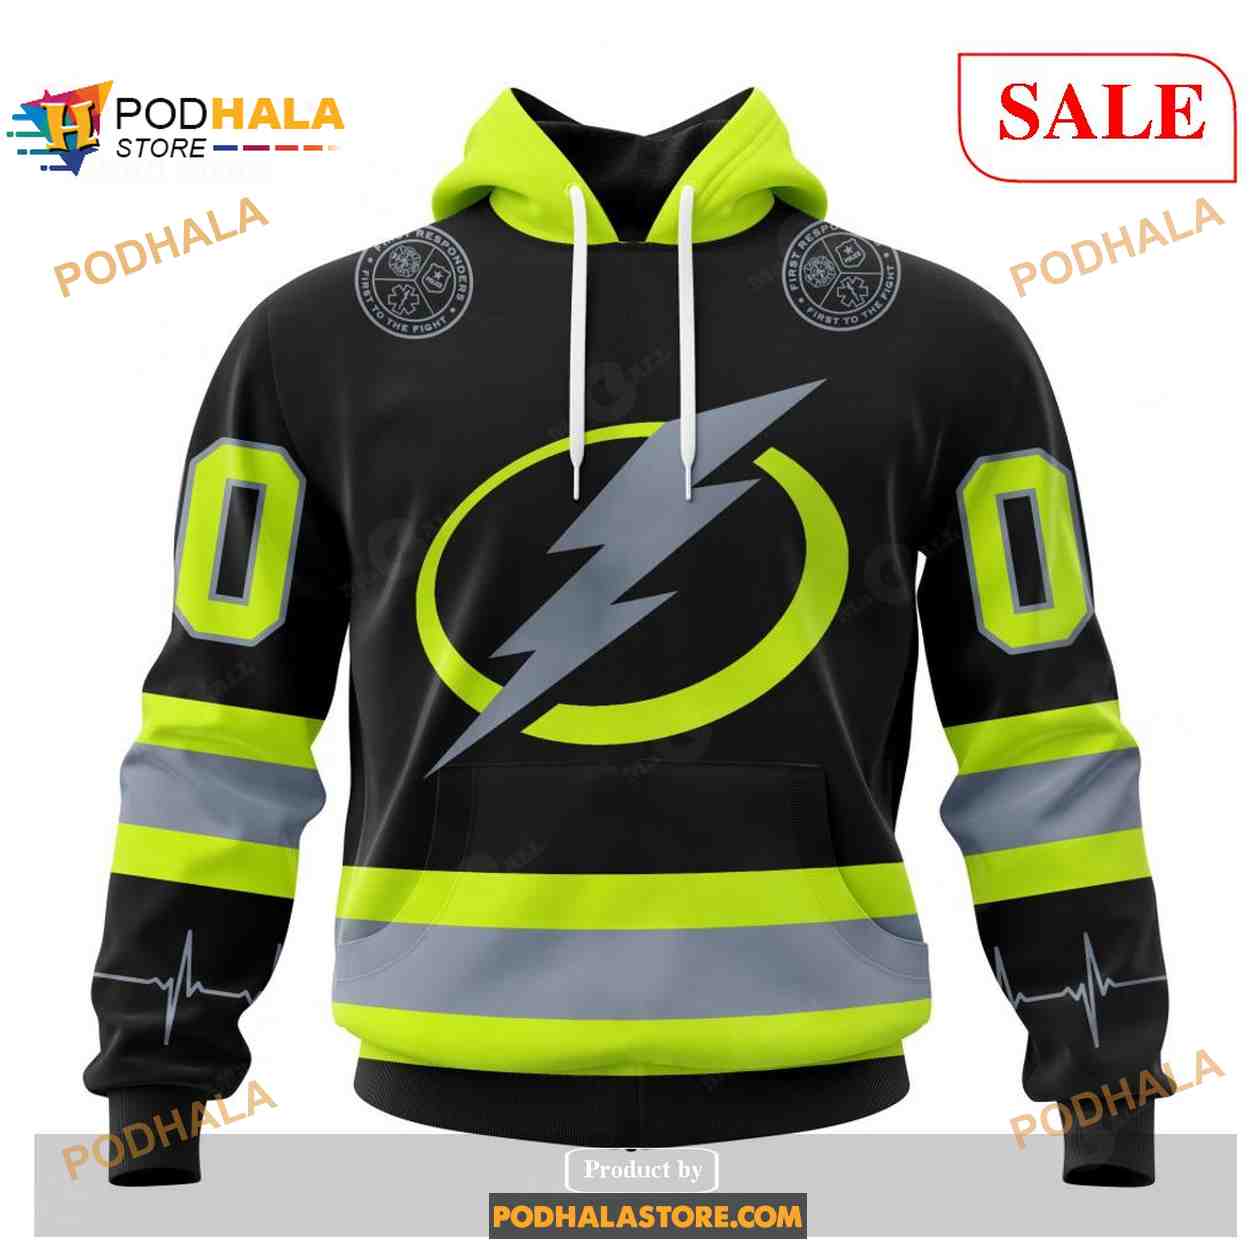 Tampa Bay Lightning Custom Jerseys, Lightning Custom Uniforms